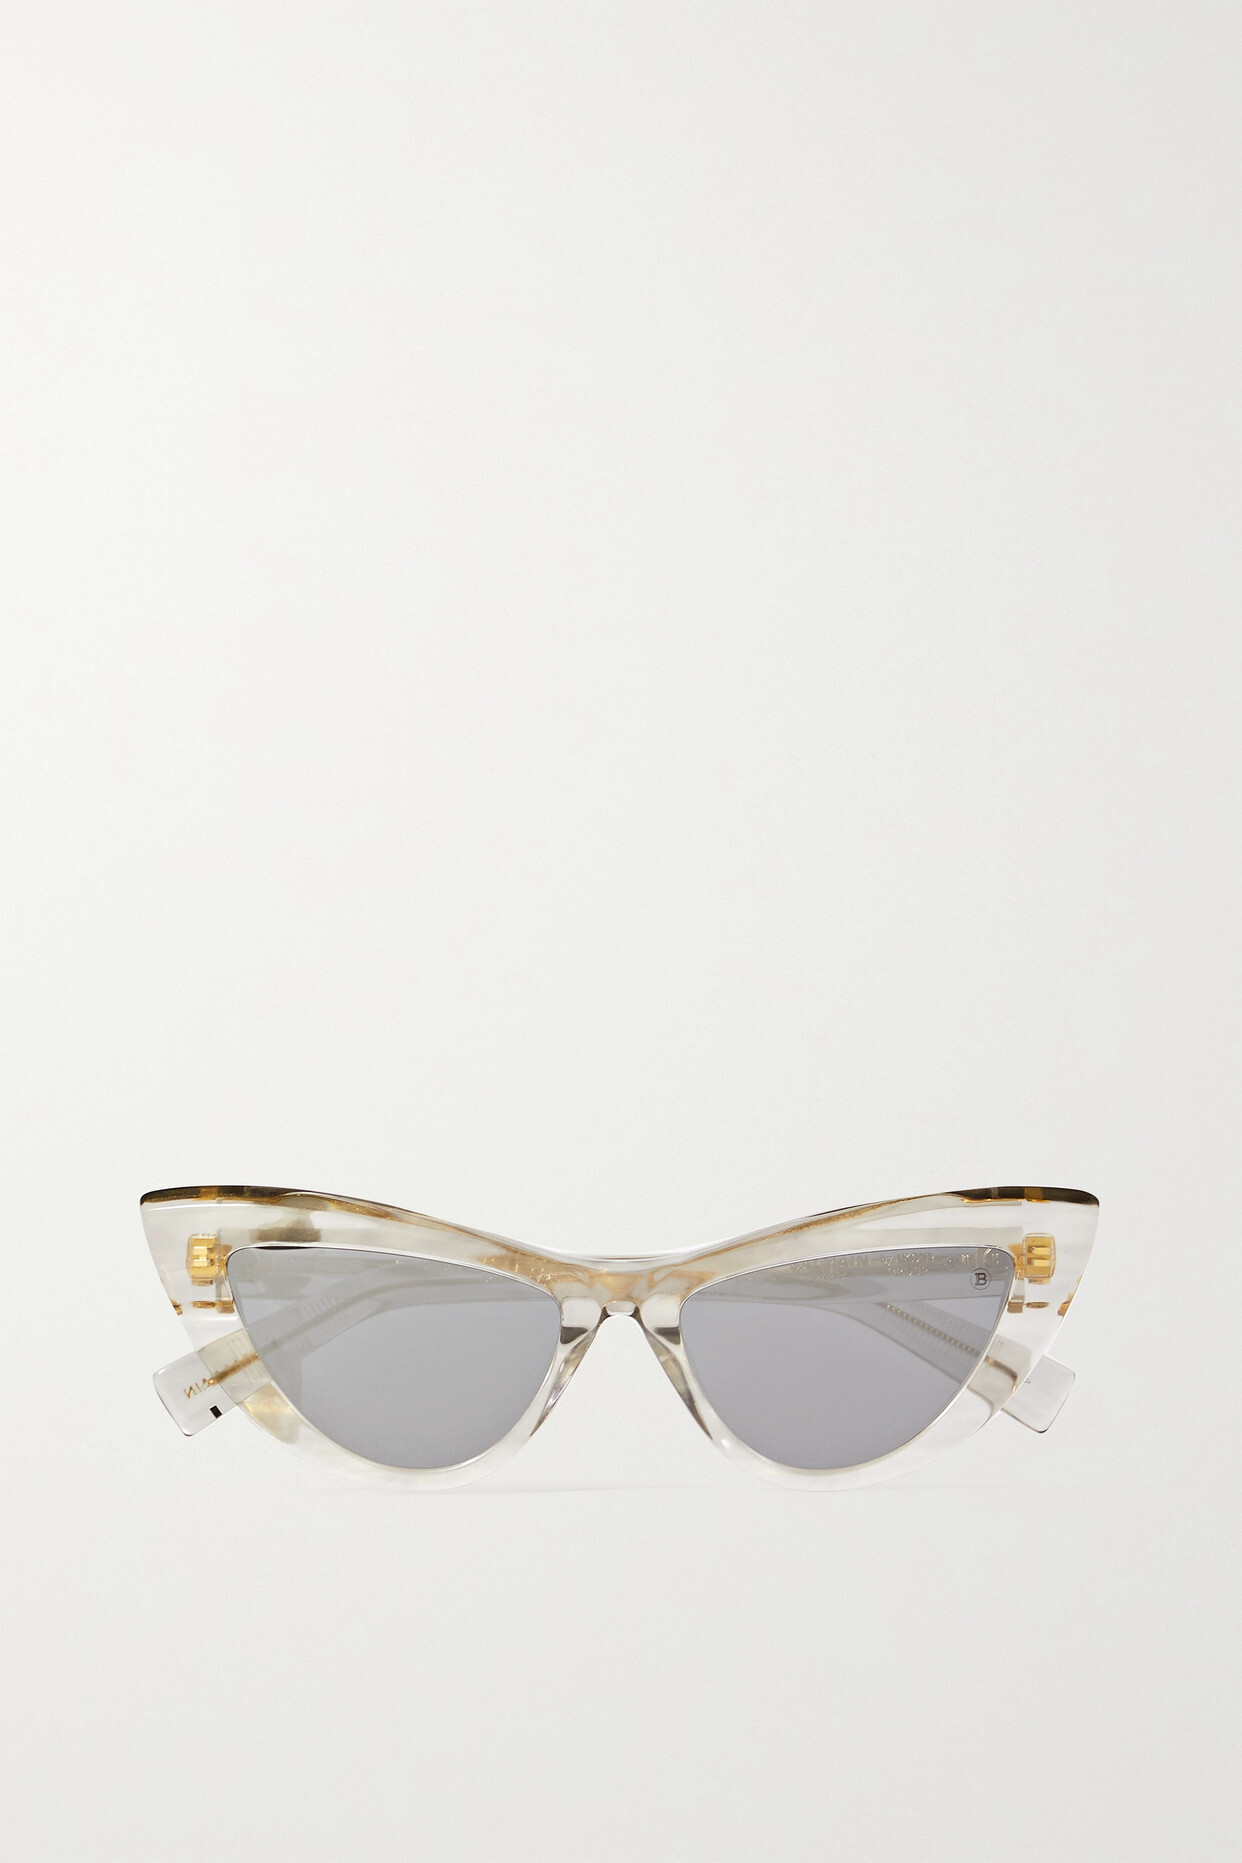 Balmain - Jolie Cat-eye Acetate Mirrored Sunglasses - Gray